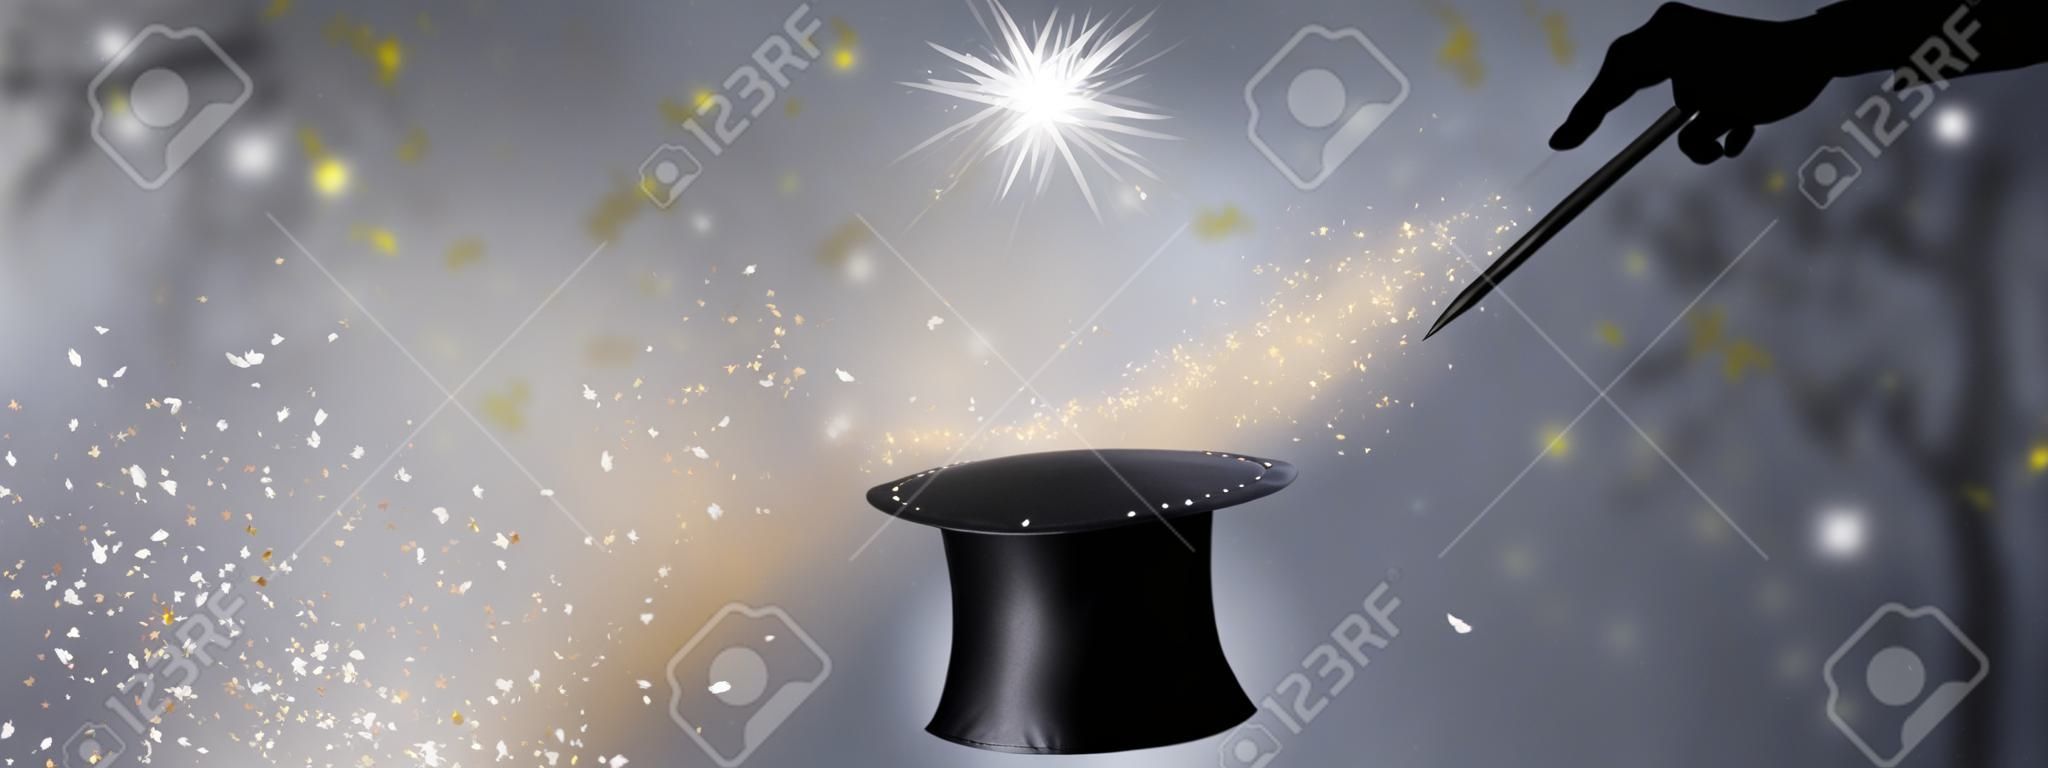 魔術師手中的黑色帽子和魔杖